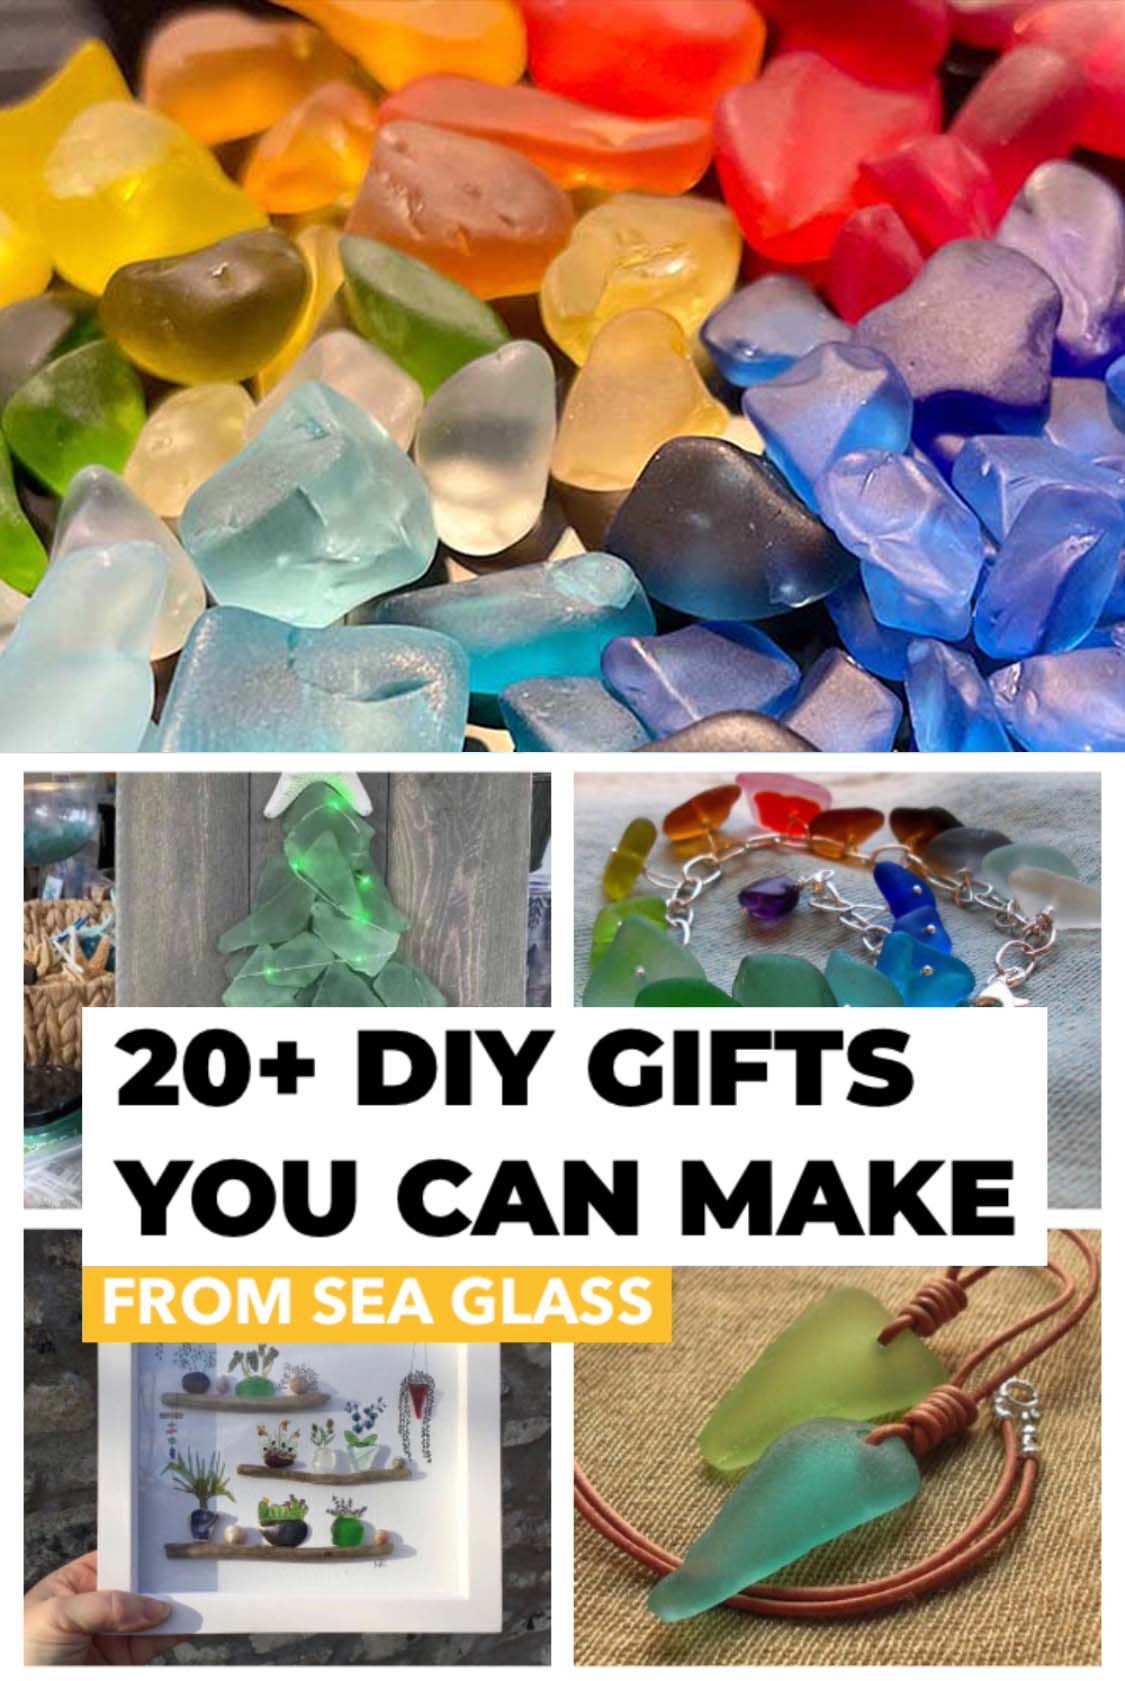 https://loveseaglass.com/wp-content/uploads/2021/08/sea-glass-diy-gifts.jpg